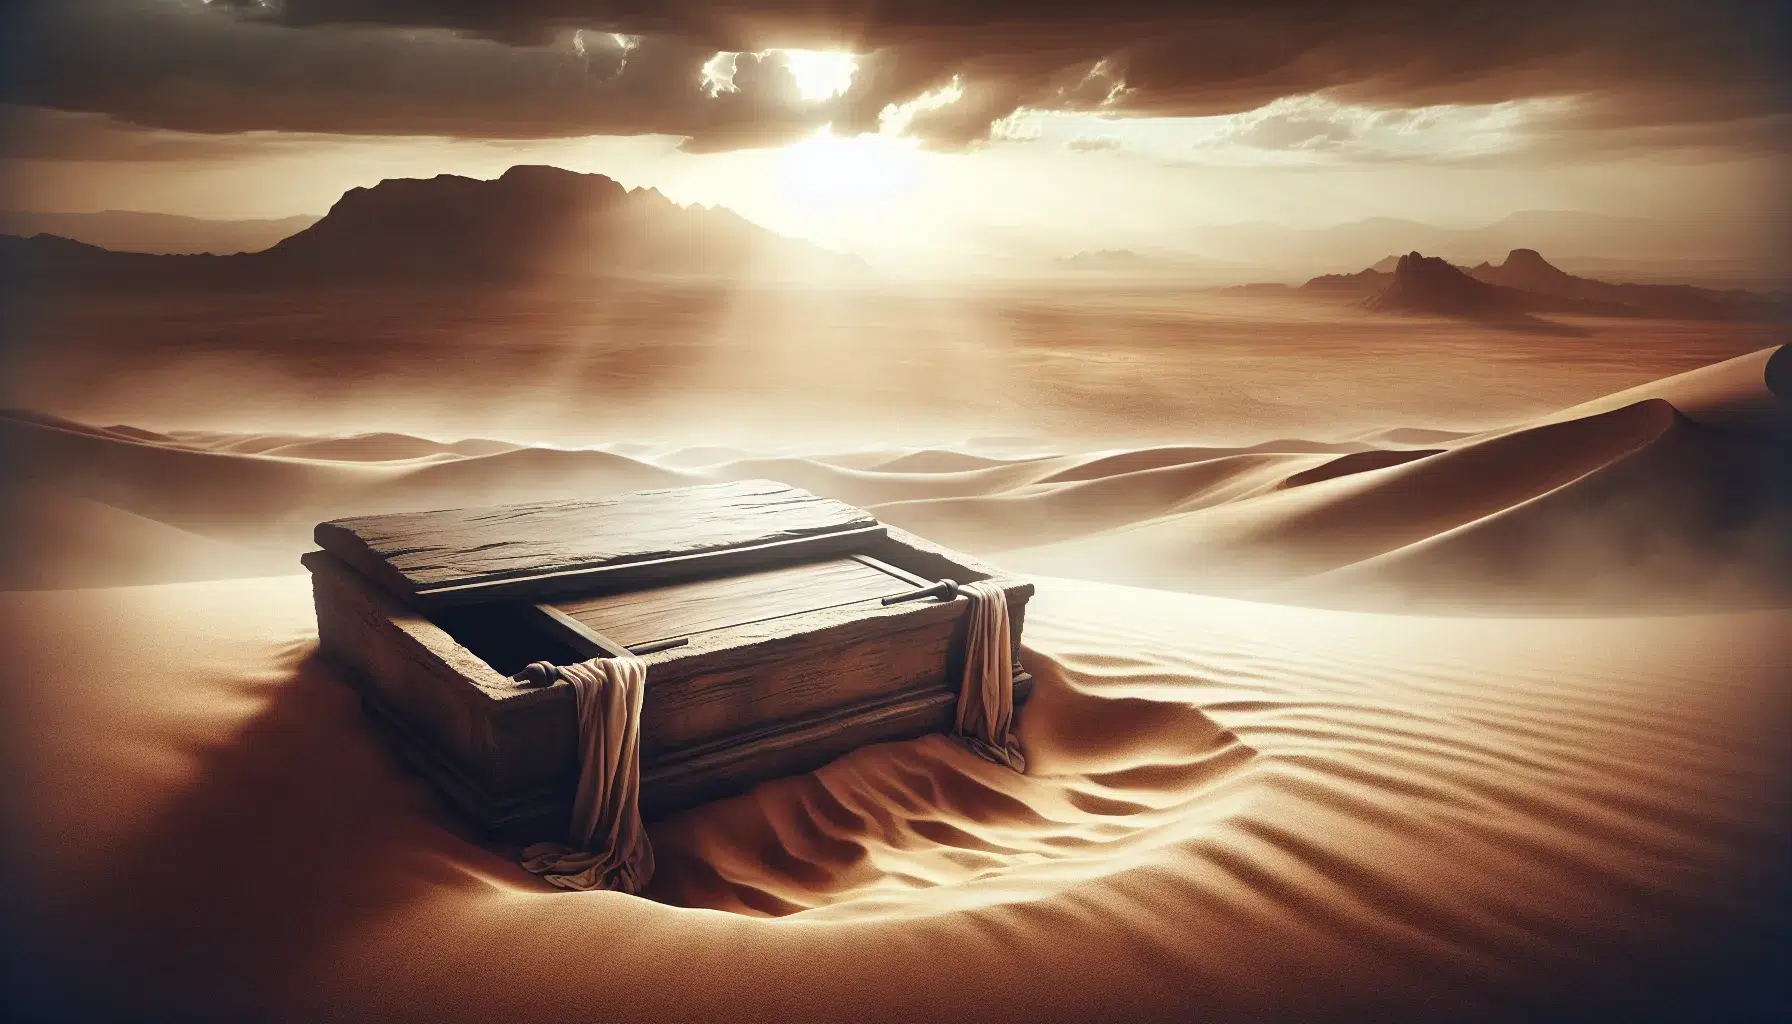 Imagen ilustrativa de un sepulcro vacío en un paisaje desértico